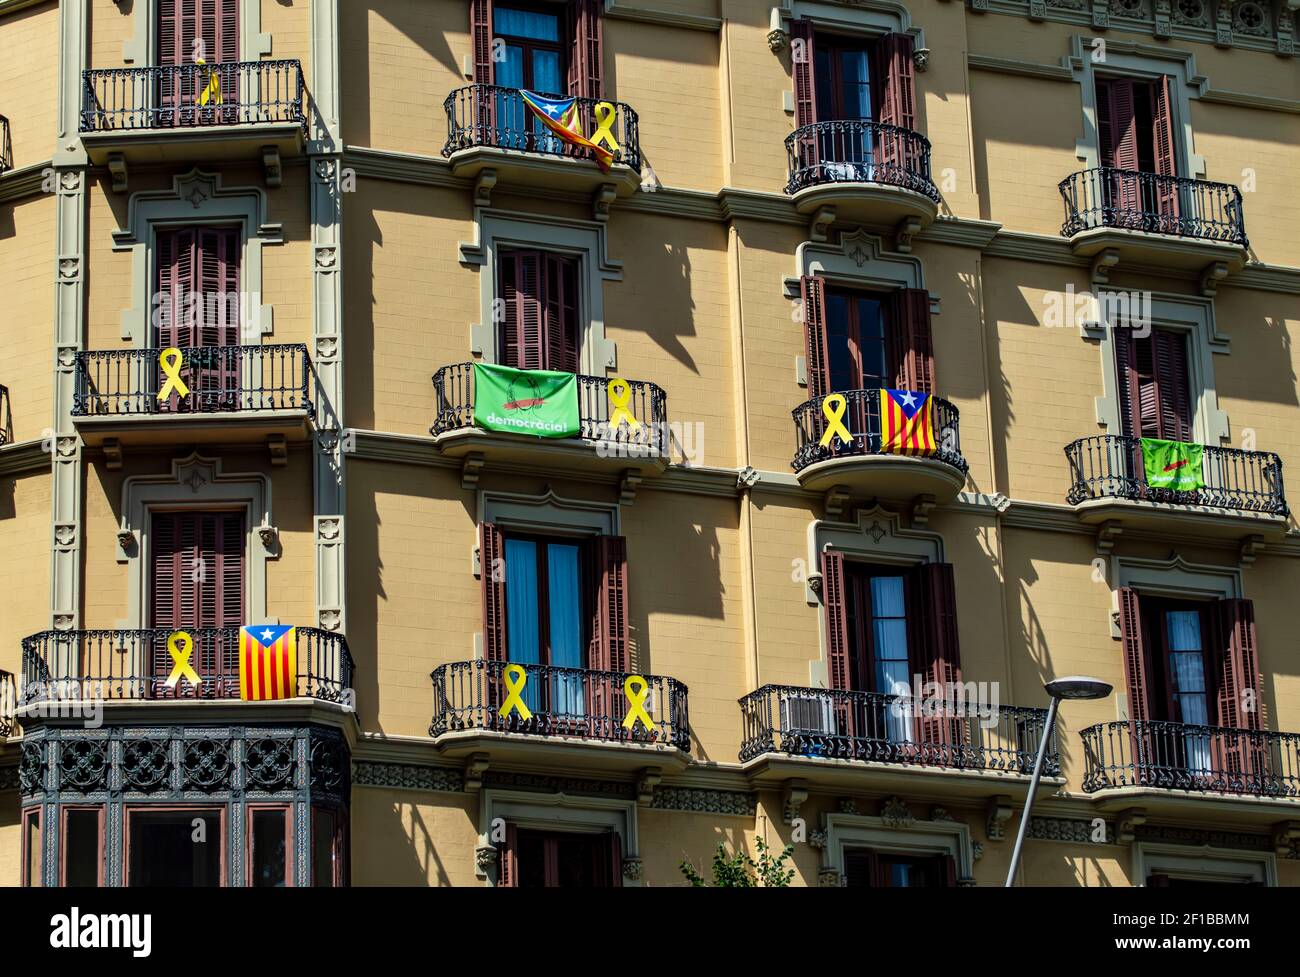 Barcelona, España - 24 de julio de 2019: Banderas catalanas y cintas de protesta en los balcones de un edificio de la ciudad de Barcelona, Cataluña, España Foto de stock